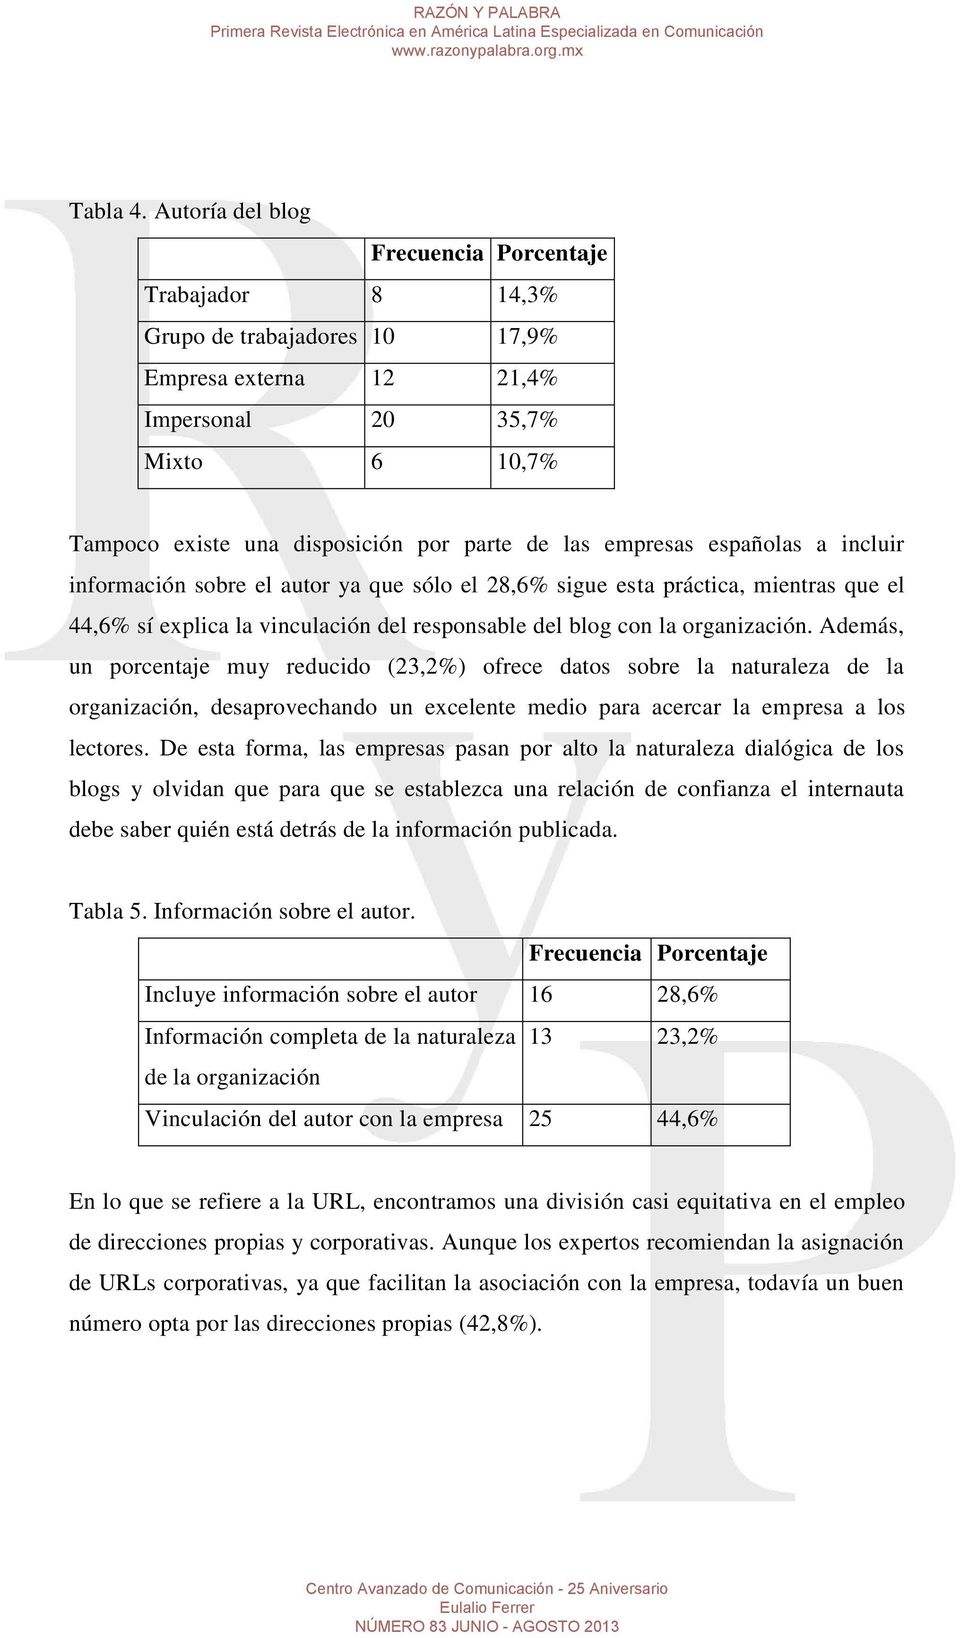 empresas españolas a incluir información sobre el autor ya que sólo el 28,6% sigue esta práctica, mientras que el 44,6% sí explica la vinculación del responsable del blog con la organización.